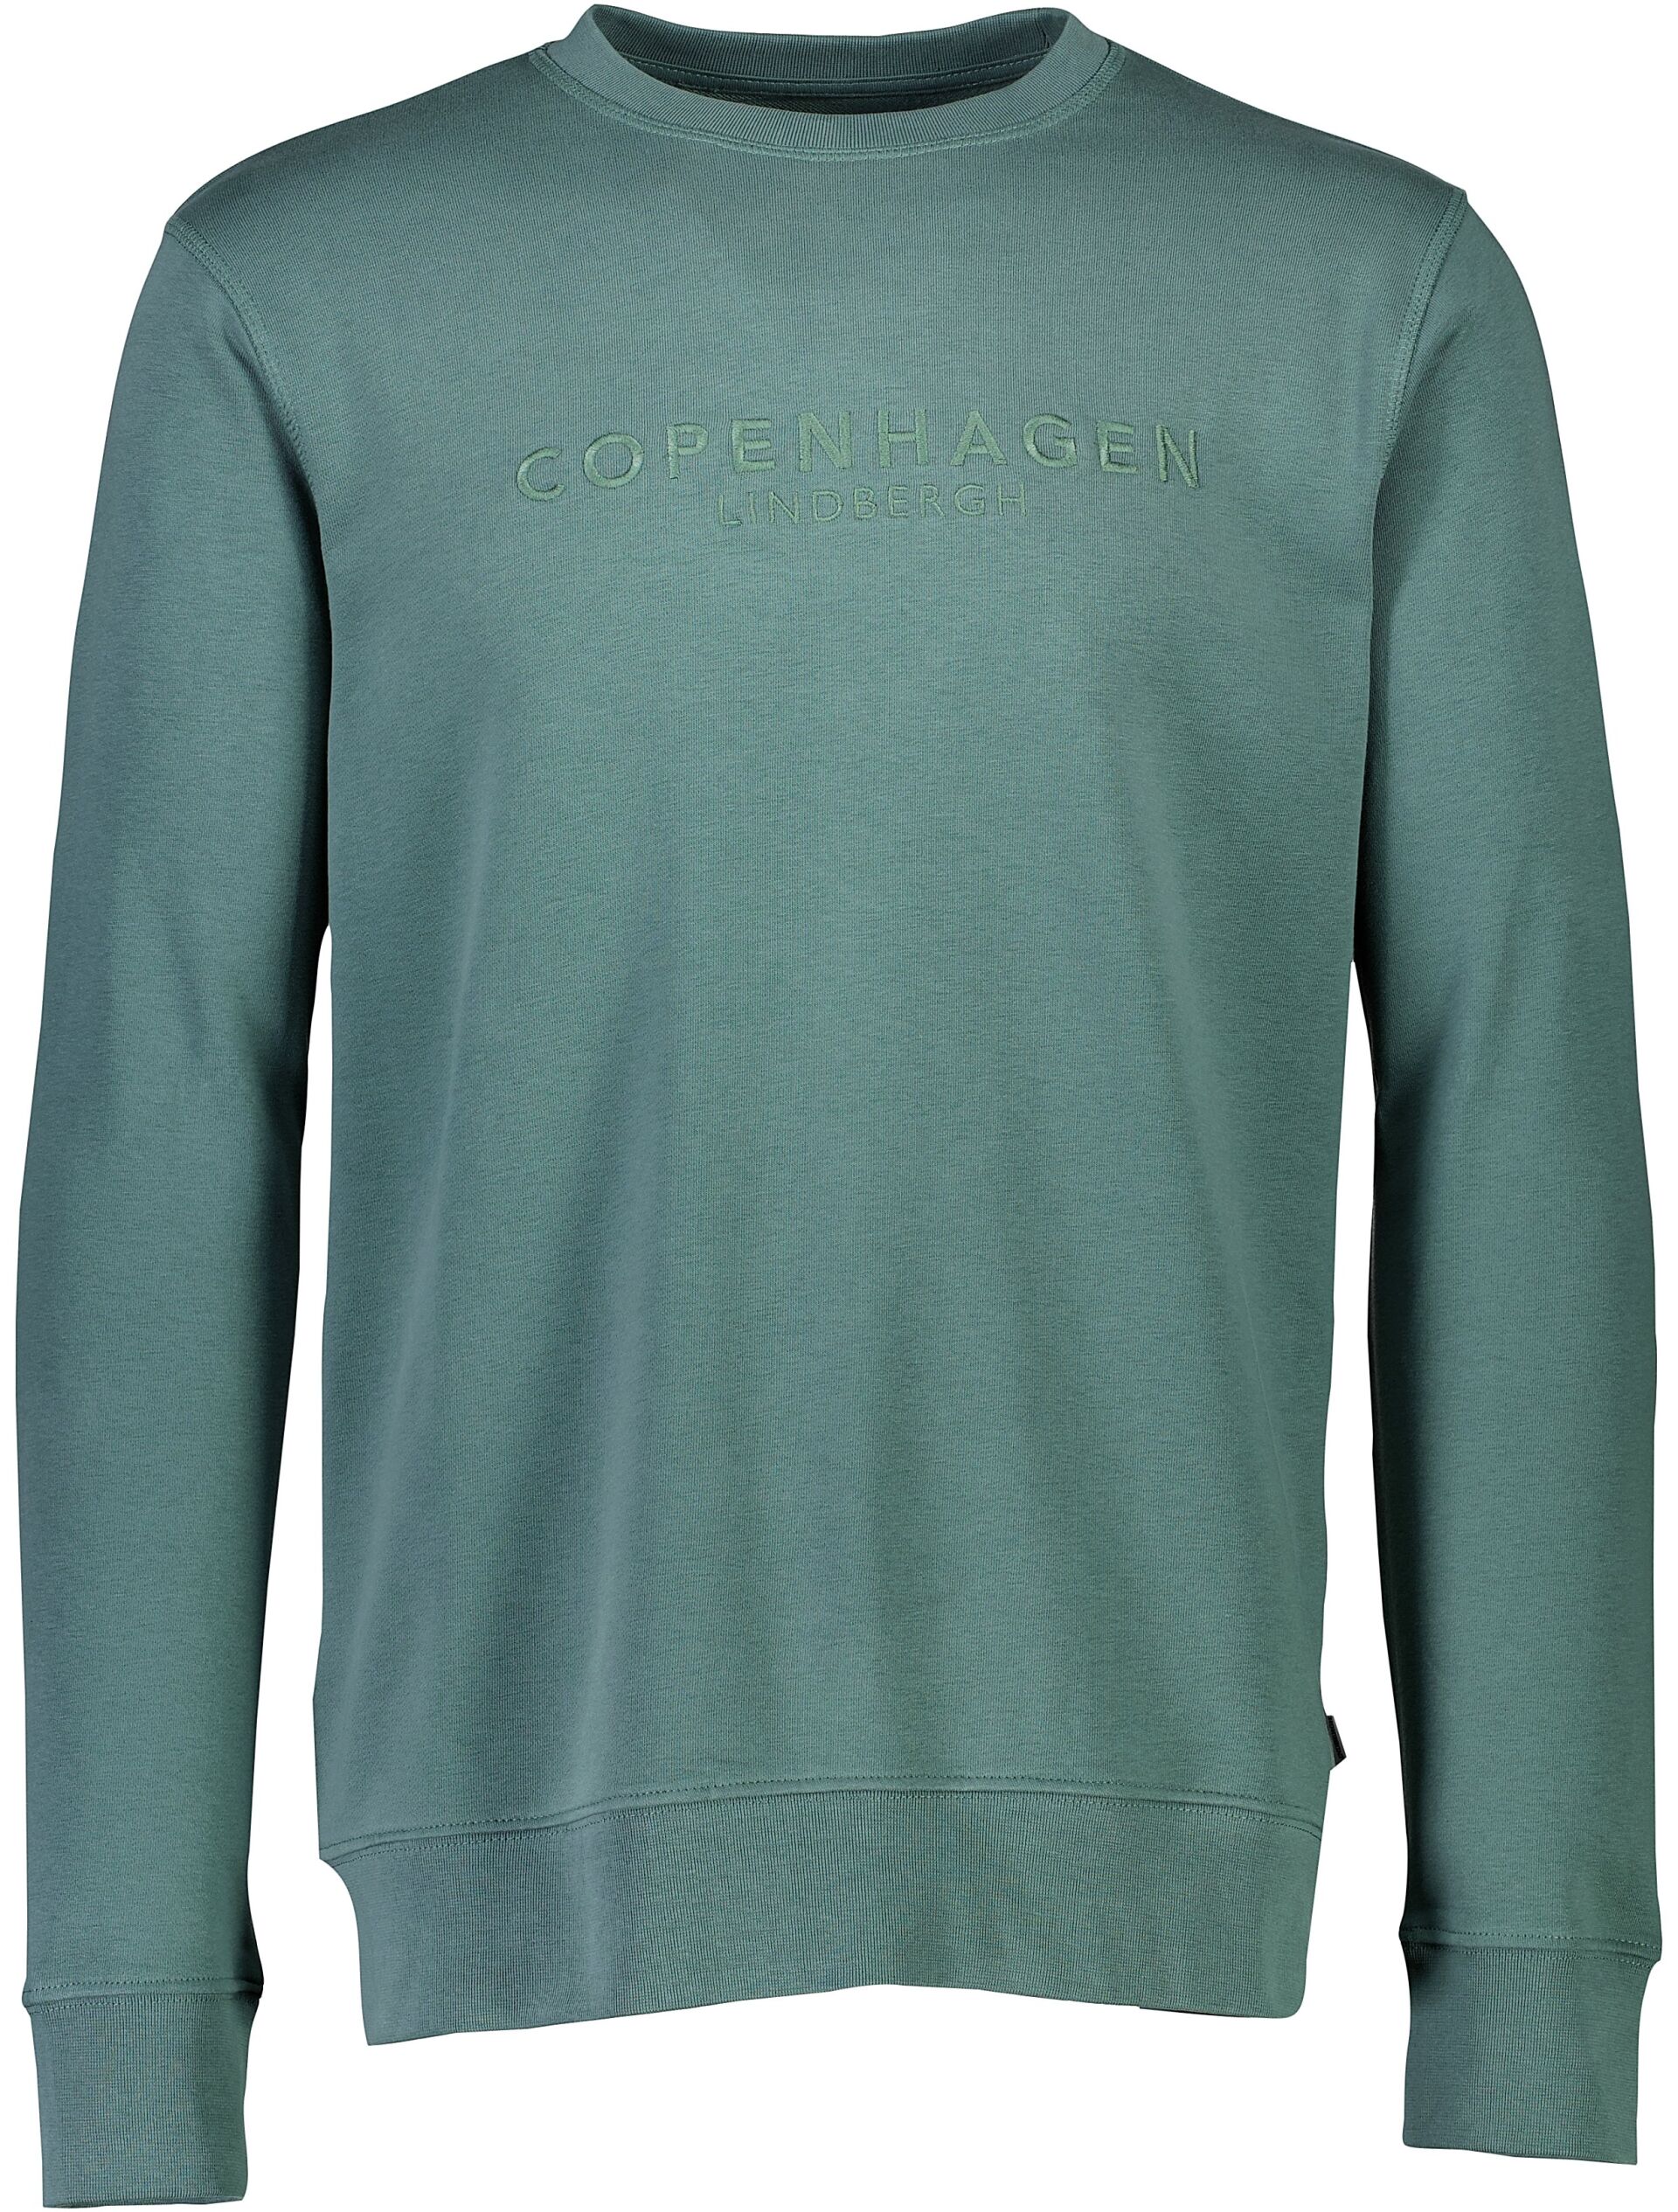 Sweatshirt Sweatshirt Grün 30-705095C